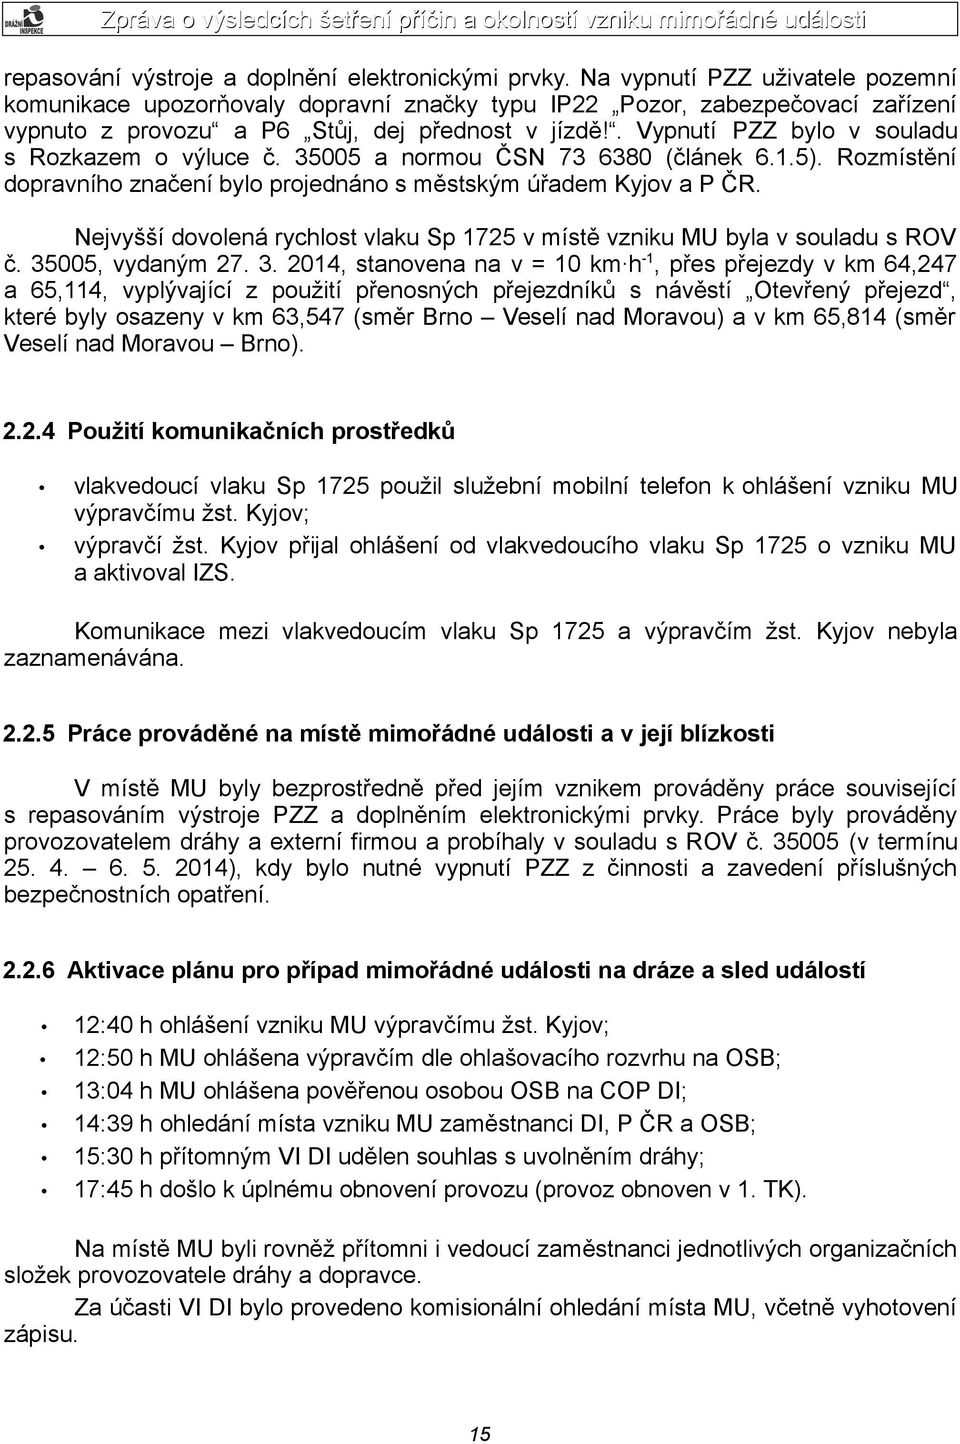 . Vypnutí PZZ bylo v souladu s Rozkazem o výluce č. 35005 a normou ČSN 73 6380 (článek 6.1.5). Rozmístění dopravního značení bylo projednáno s městským úřadem Kyjov a P ČR.